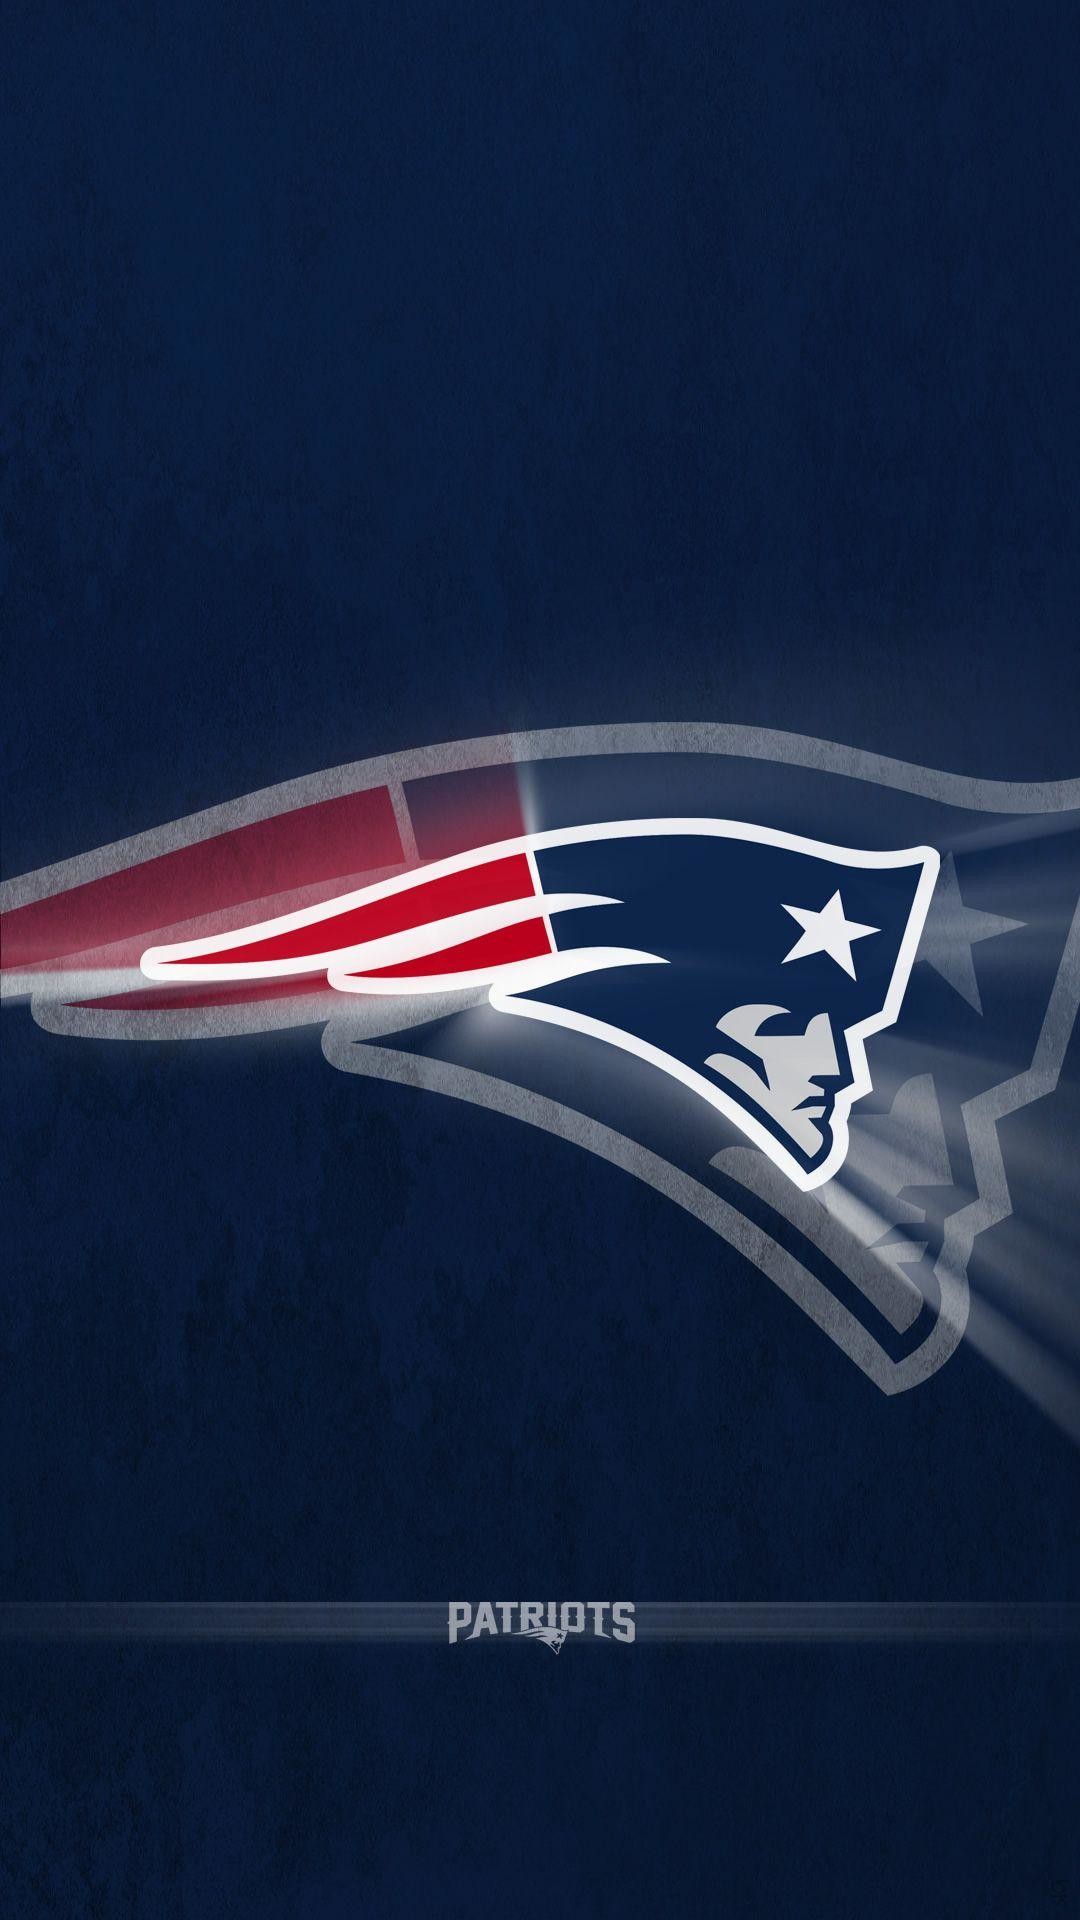 1080x1920 ... Superbowl XLIX wallpaper – New England Patriots. Download wallpaper